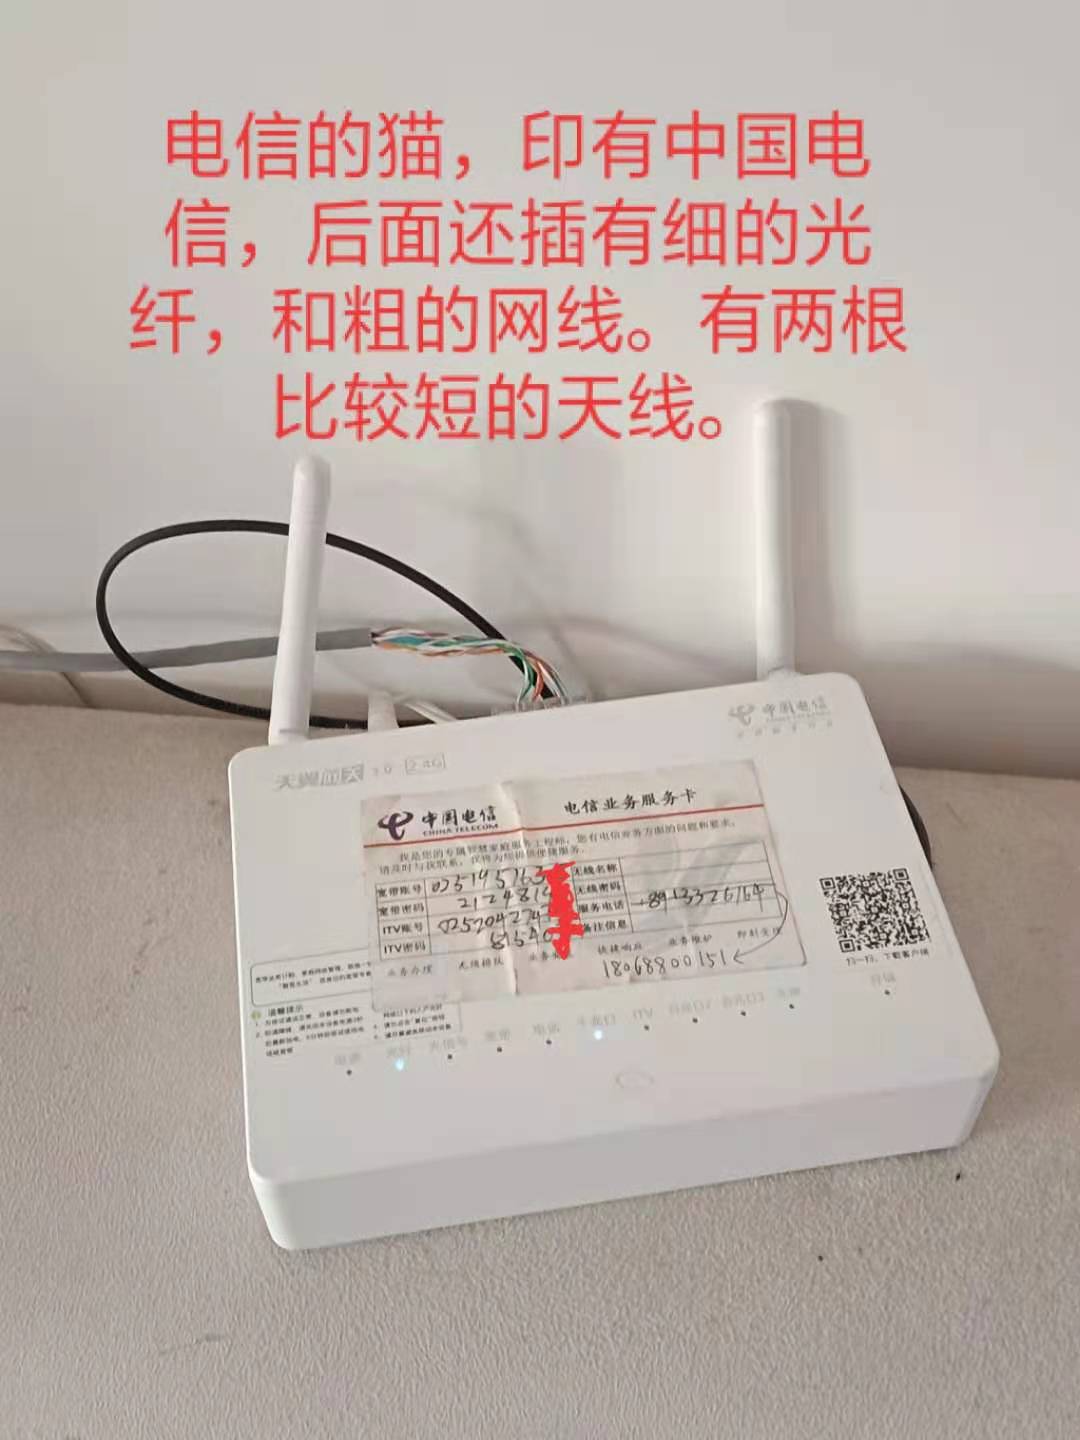 电信机顶盒密码_中国电信机顶盒密码_电信机顶盒密码原始密码是多少